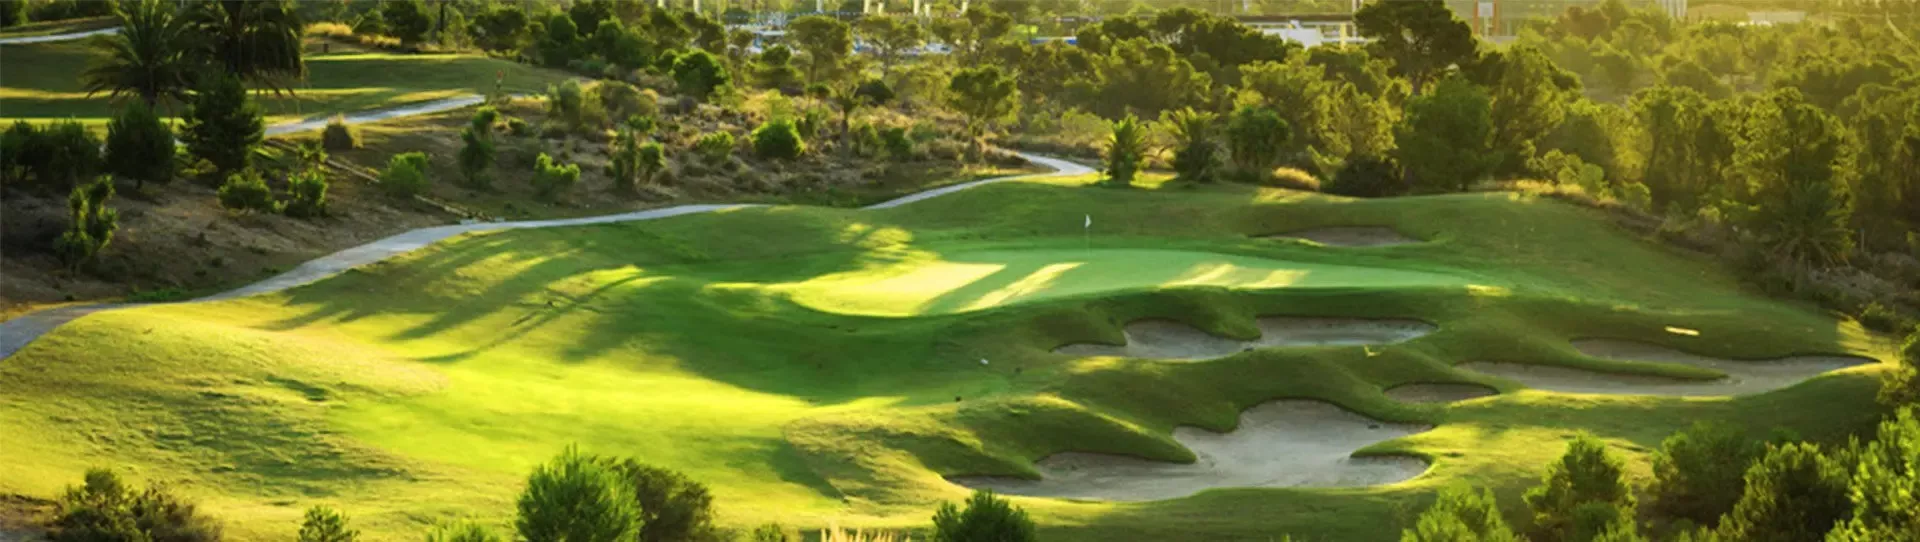 Spain golf courses - Villaitana Golf Course Levante - Photo 3